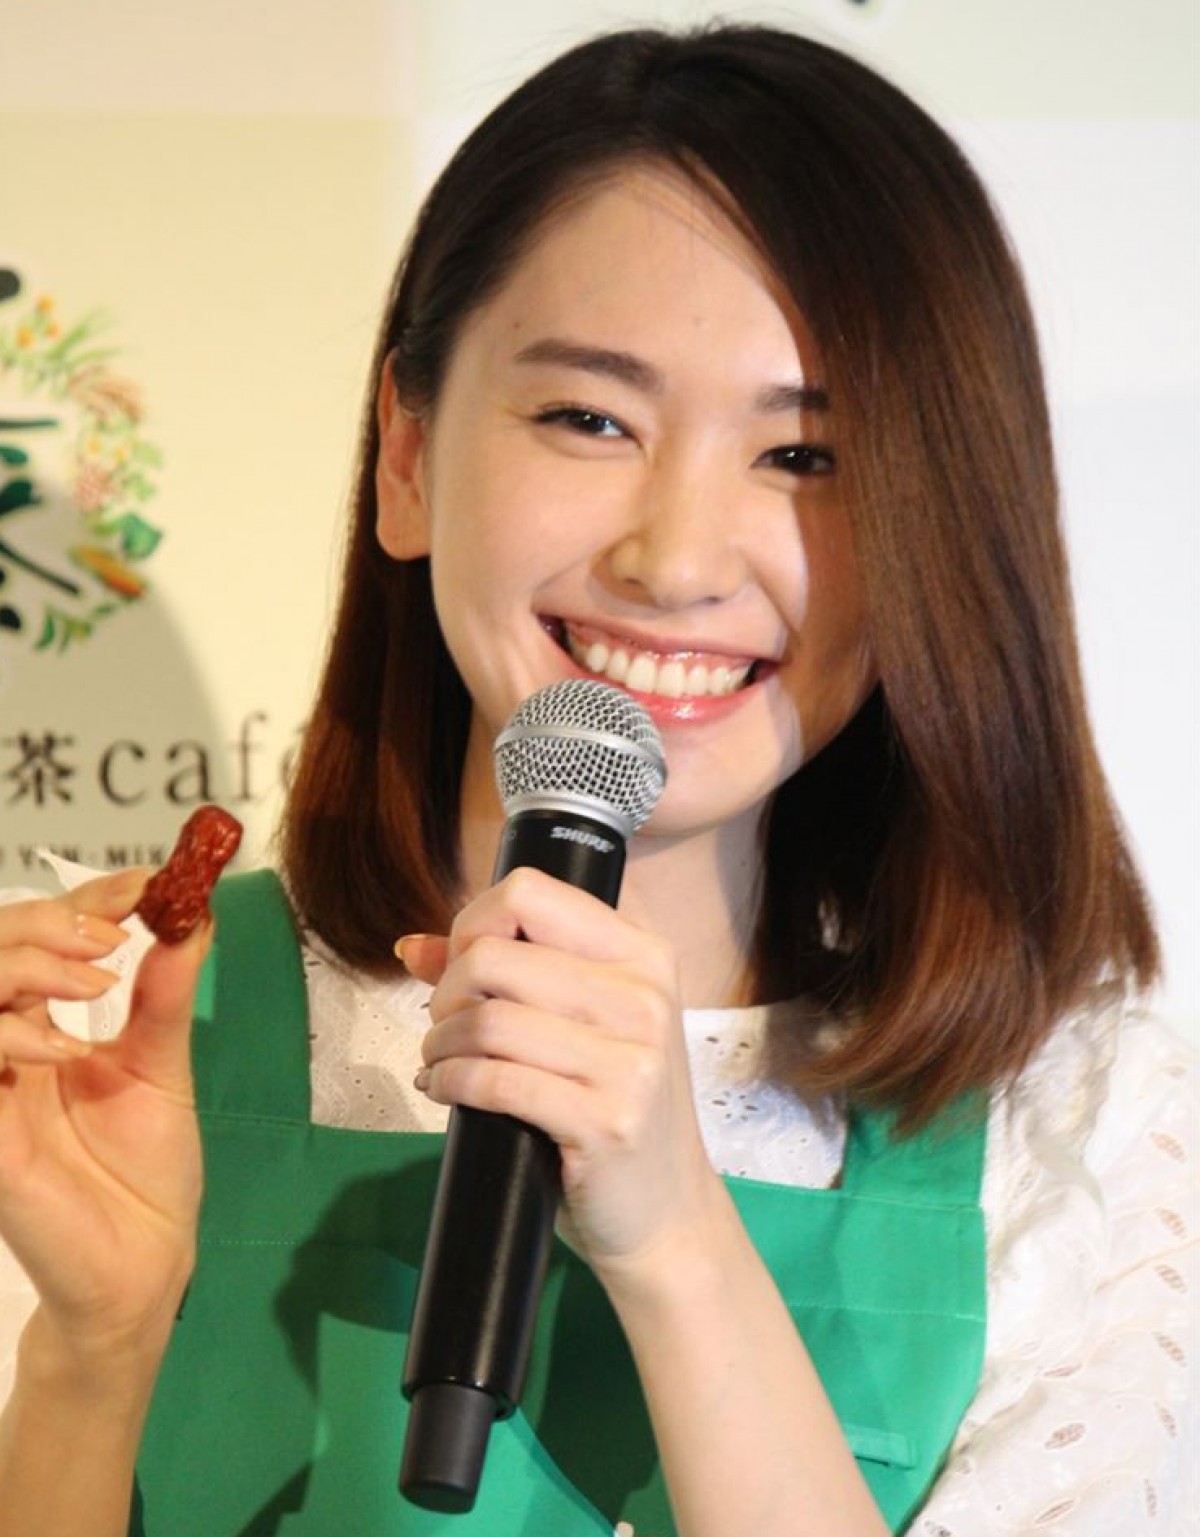 「健康十六茶cafe」オープニングイベントに出席した女優の新垣結衣